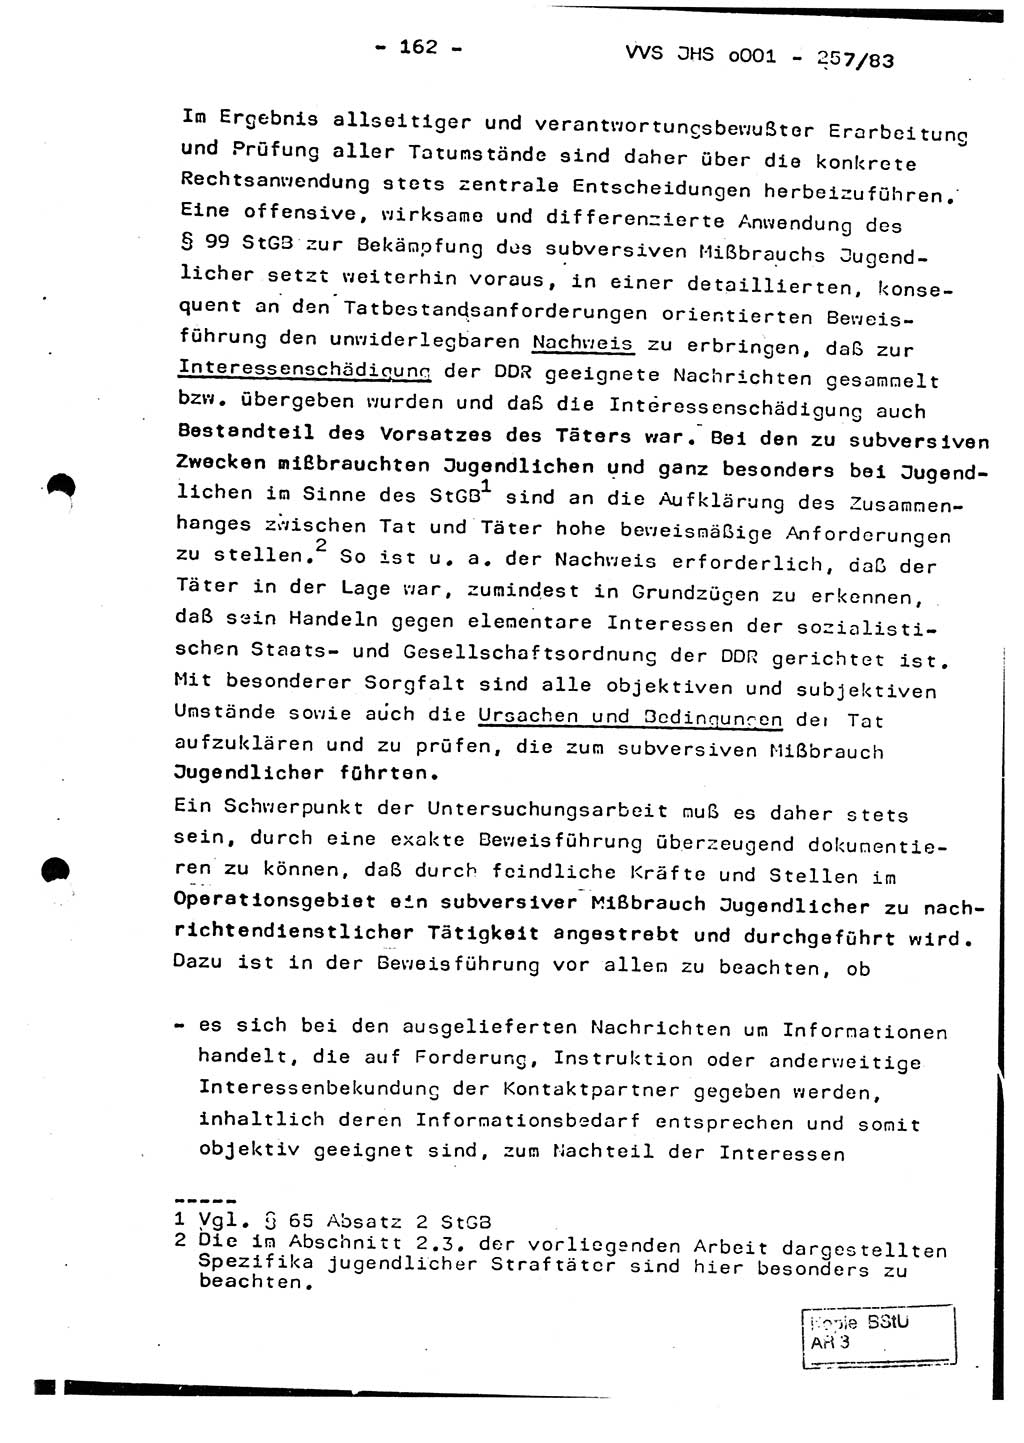 Dissertation, Oberst Helmut Lubas (BV Mdg.), Oberstleutnant Manfred Eschberger (HA IX), Oberleutnant Hans-Jürgen Ludwig (JHS), Ministerium für Staatssicherheit (MfS) [Deutsche Demokratische Republik (DDR)], Juristische Hochschule (JHS), Vertrauliche Verschlußsache (VVS) o001-257/83, Potsdam 1983, Seite 162 (Diss. MfS DDR JHS VVS o001-257/83 1983, S. 162)